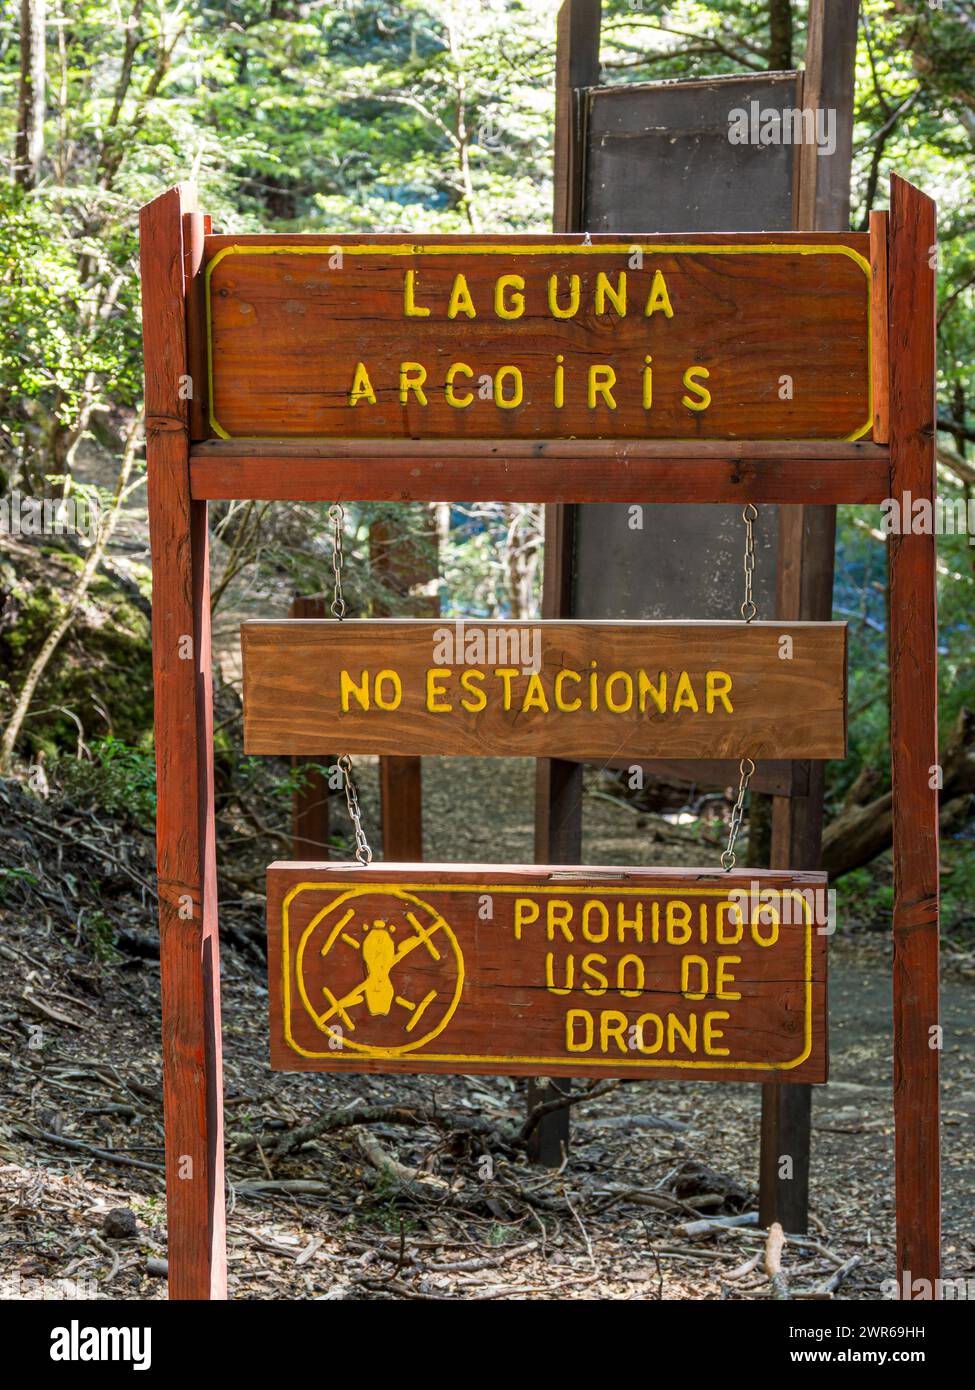 Informationsschild an der Laguna Arcoiris, Drohnenbenutzung nicht erlaubt, Parkverbotsschilder, Conguillio Nationalpark, Chile Stockfoto